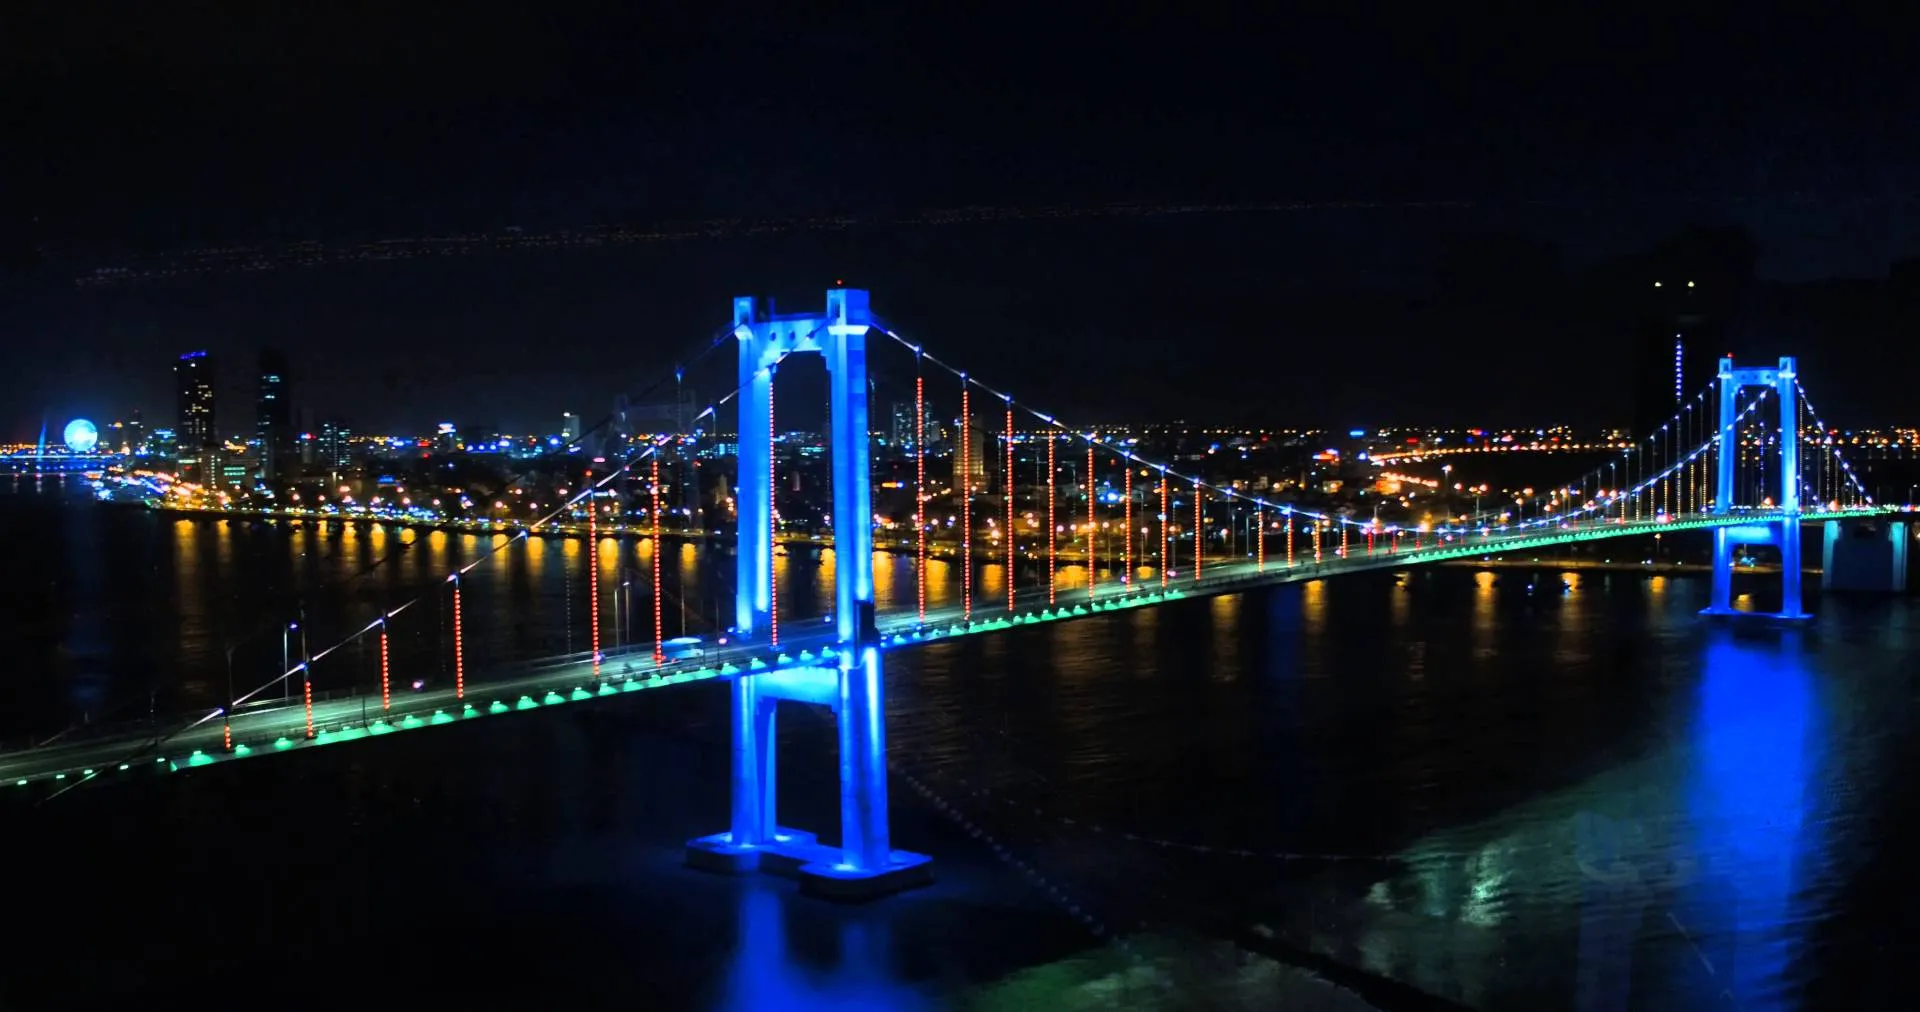 Du lịch cầu Sông Hàn - chiếc cầu quay "độc nhất vô nhị" tại Đà Nẵng